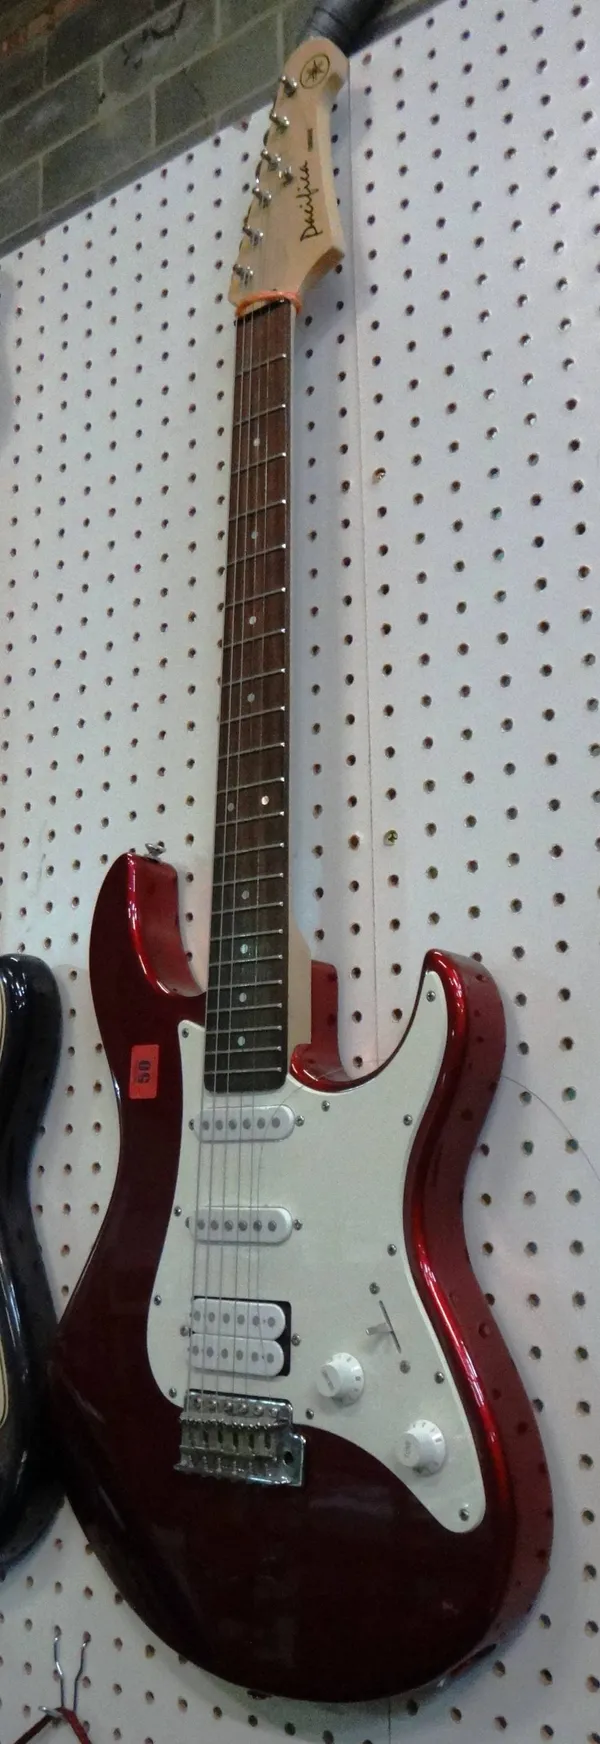 A Yamaha dark red electric guitar.